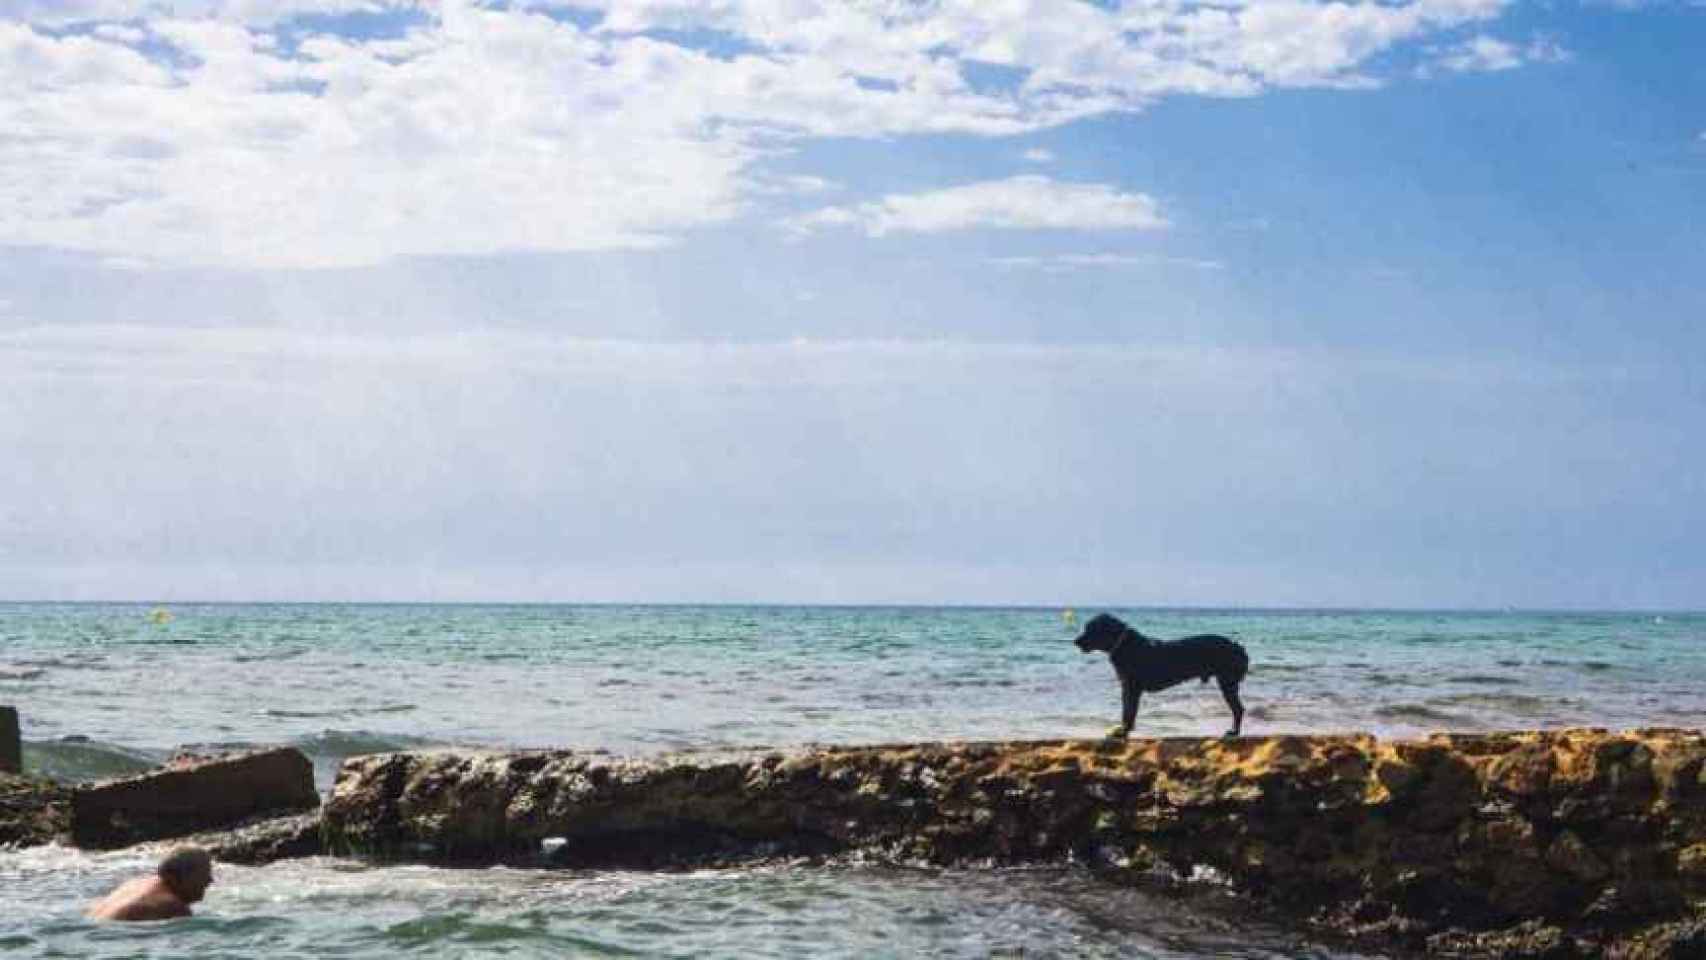 La playa de Agua Amarga (Alicante) tiene una zona de pipi-can.